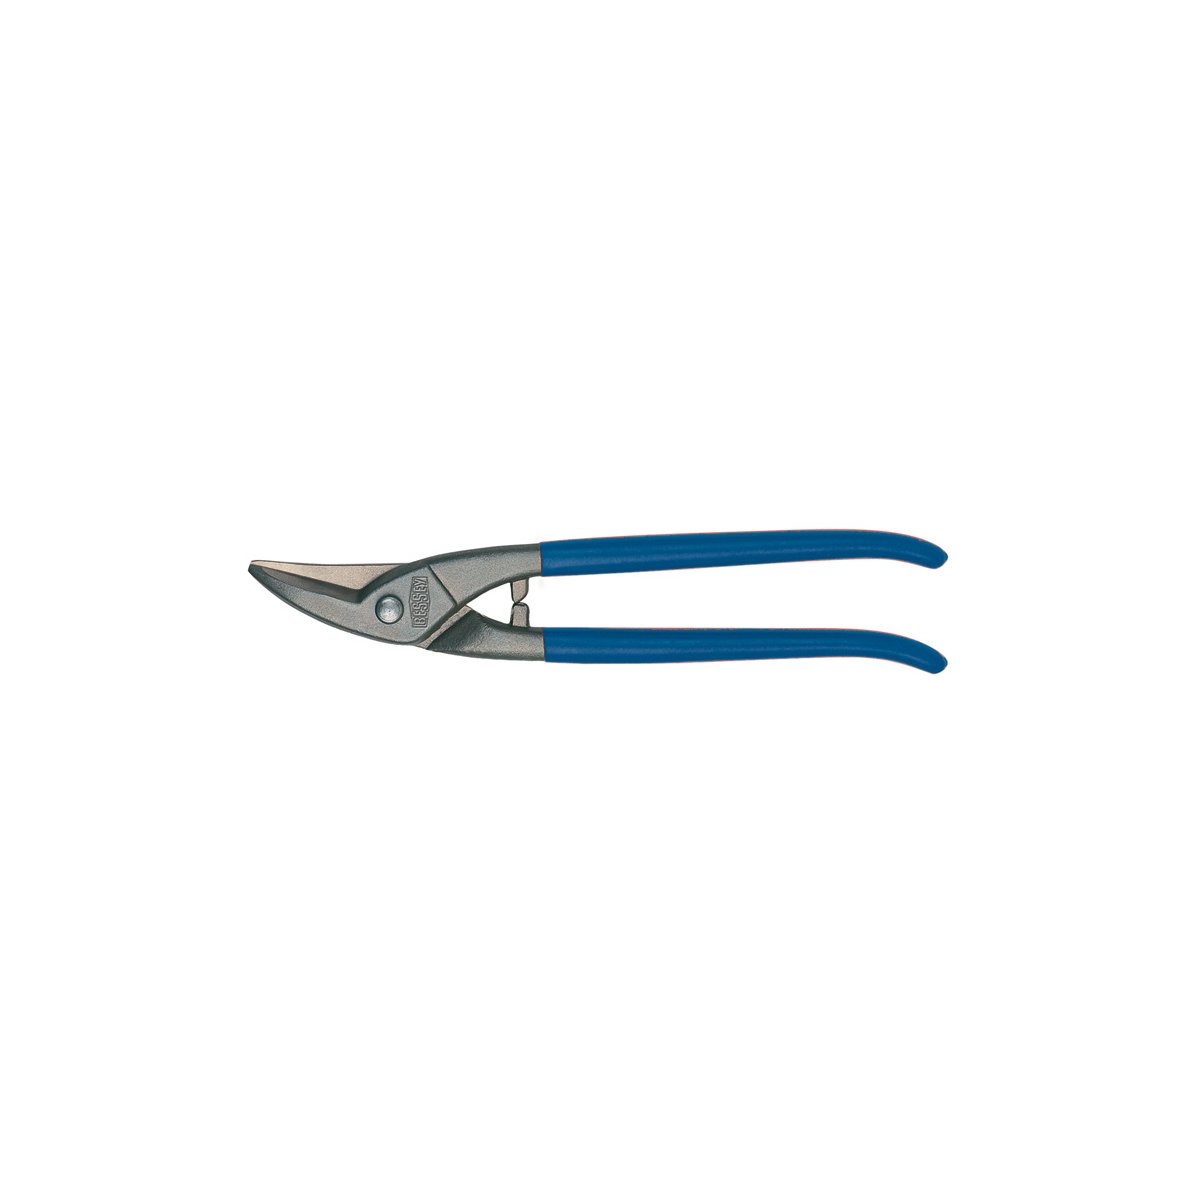 D107-225 Ножницы по металлу, для прорезания отверстий, правые, рез: 1.0 мм, 225 мм, короткий прямой и фигурный рез